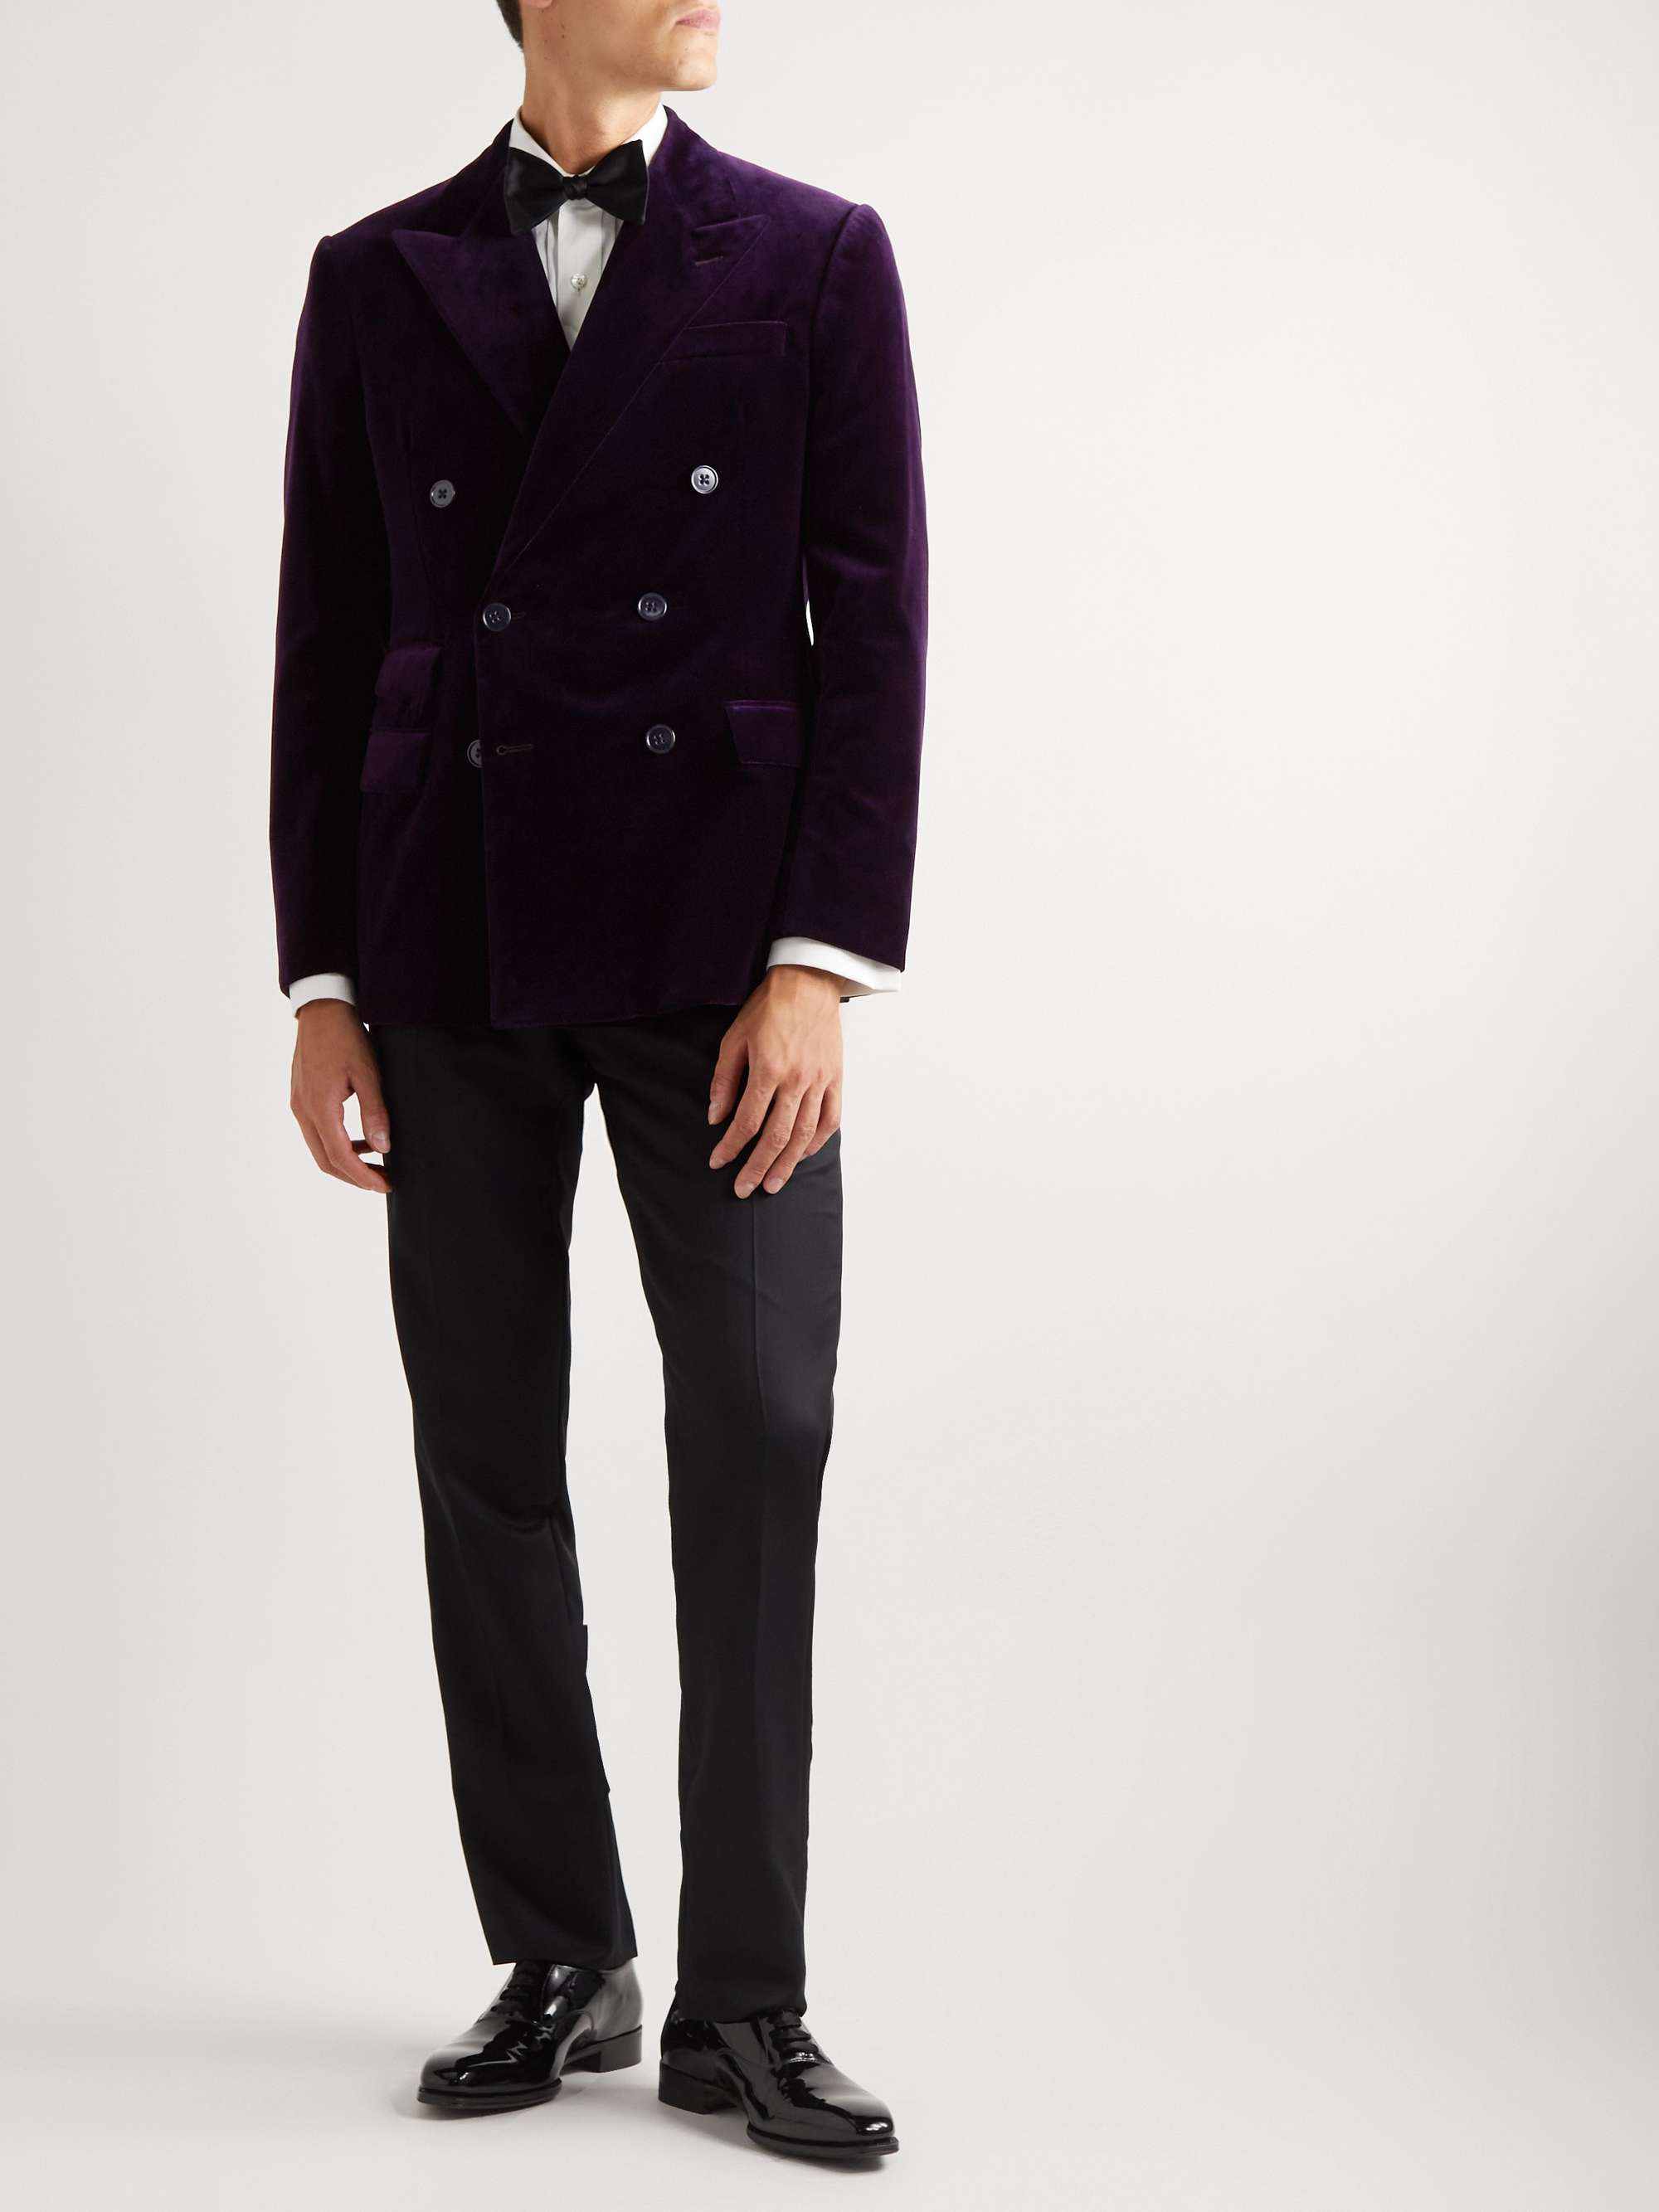 RALPH LAUREN PURPLE LABEL Double-Breasted Cotton-Velvet Tuxedo Jacket | MR  PORTER